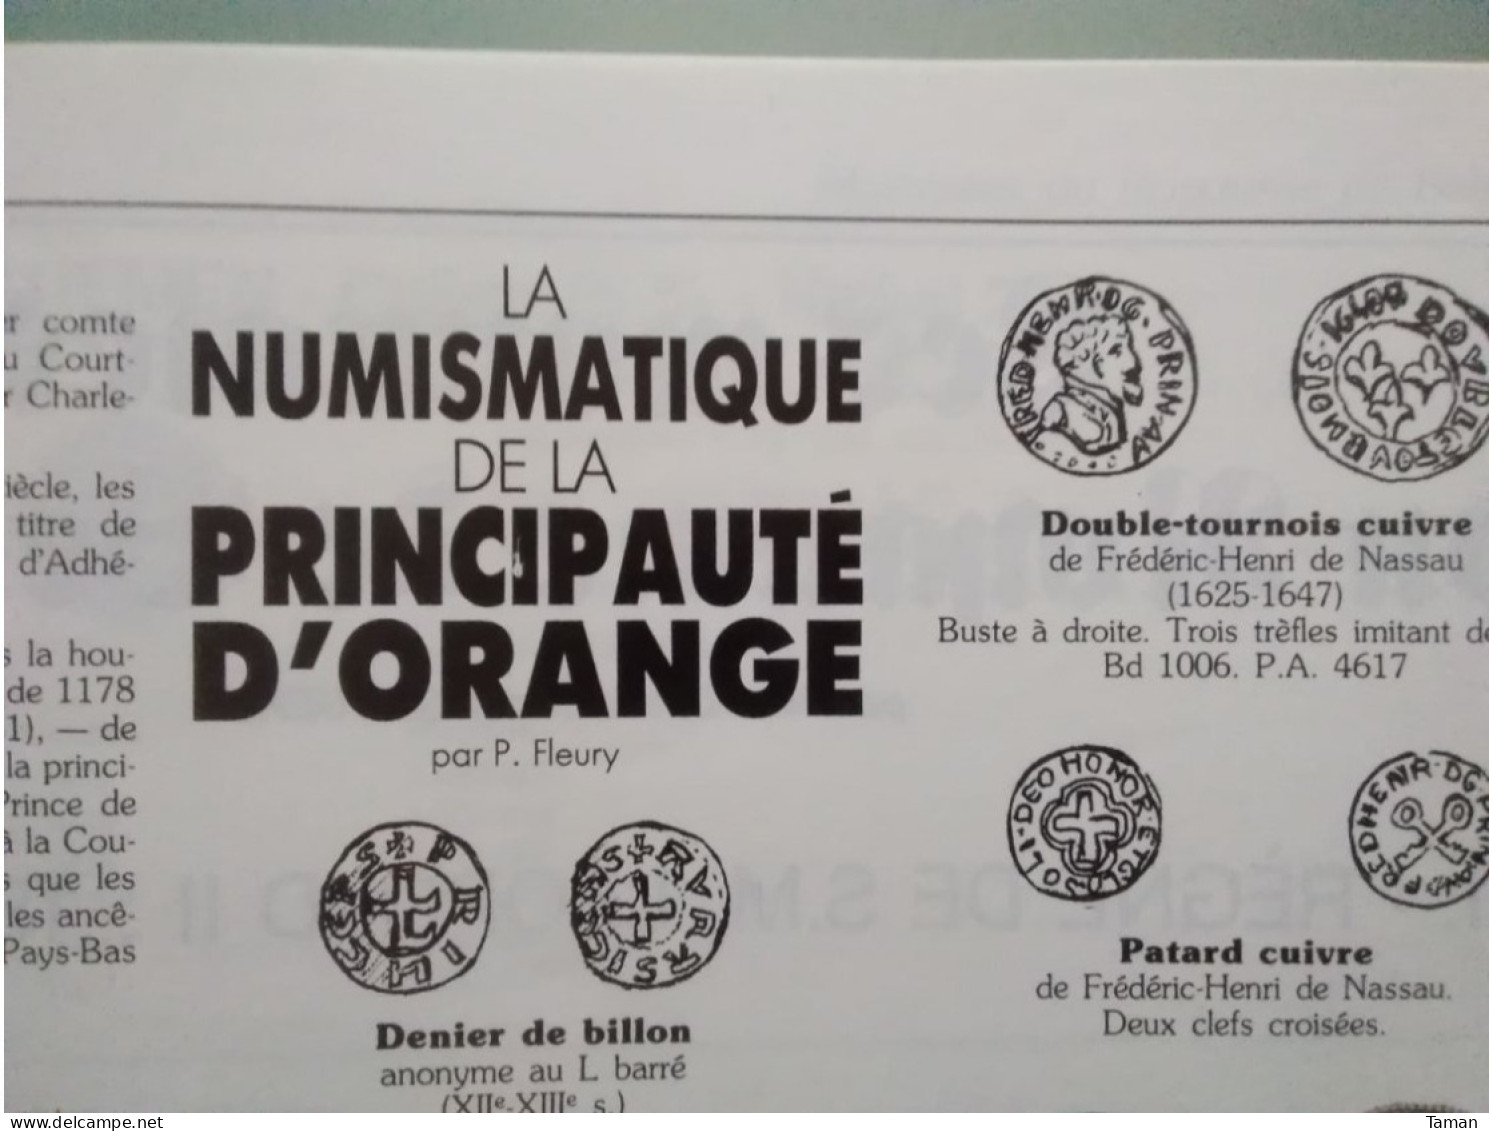 Numismatique & change - Monnaies de siège - Passage livre au franc - Principauté d'Orange